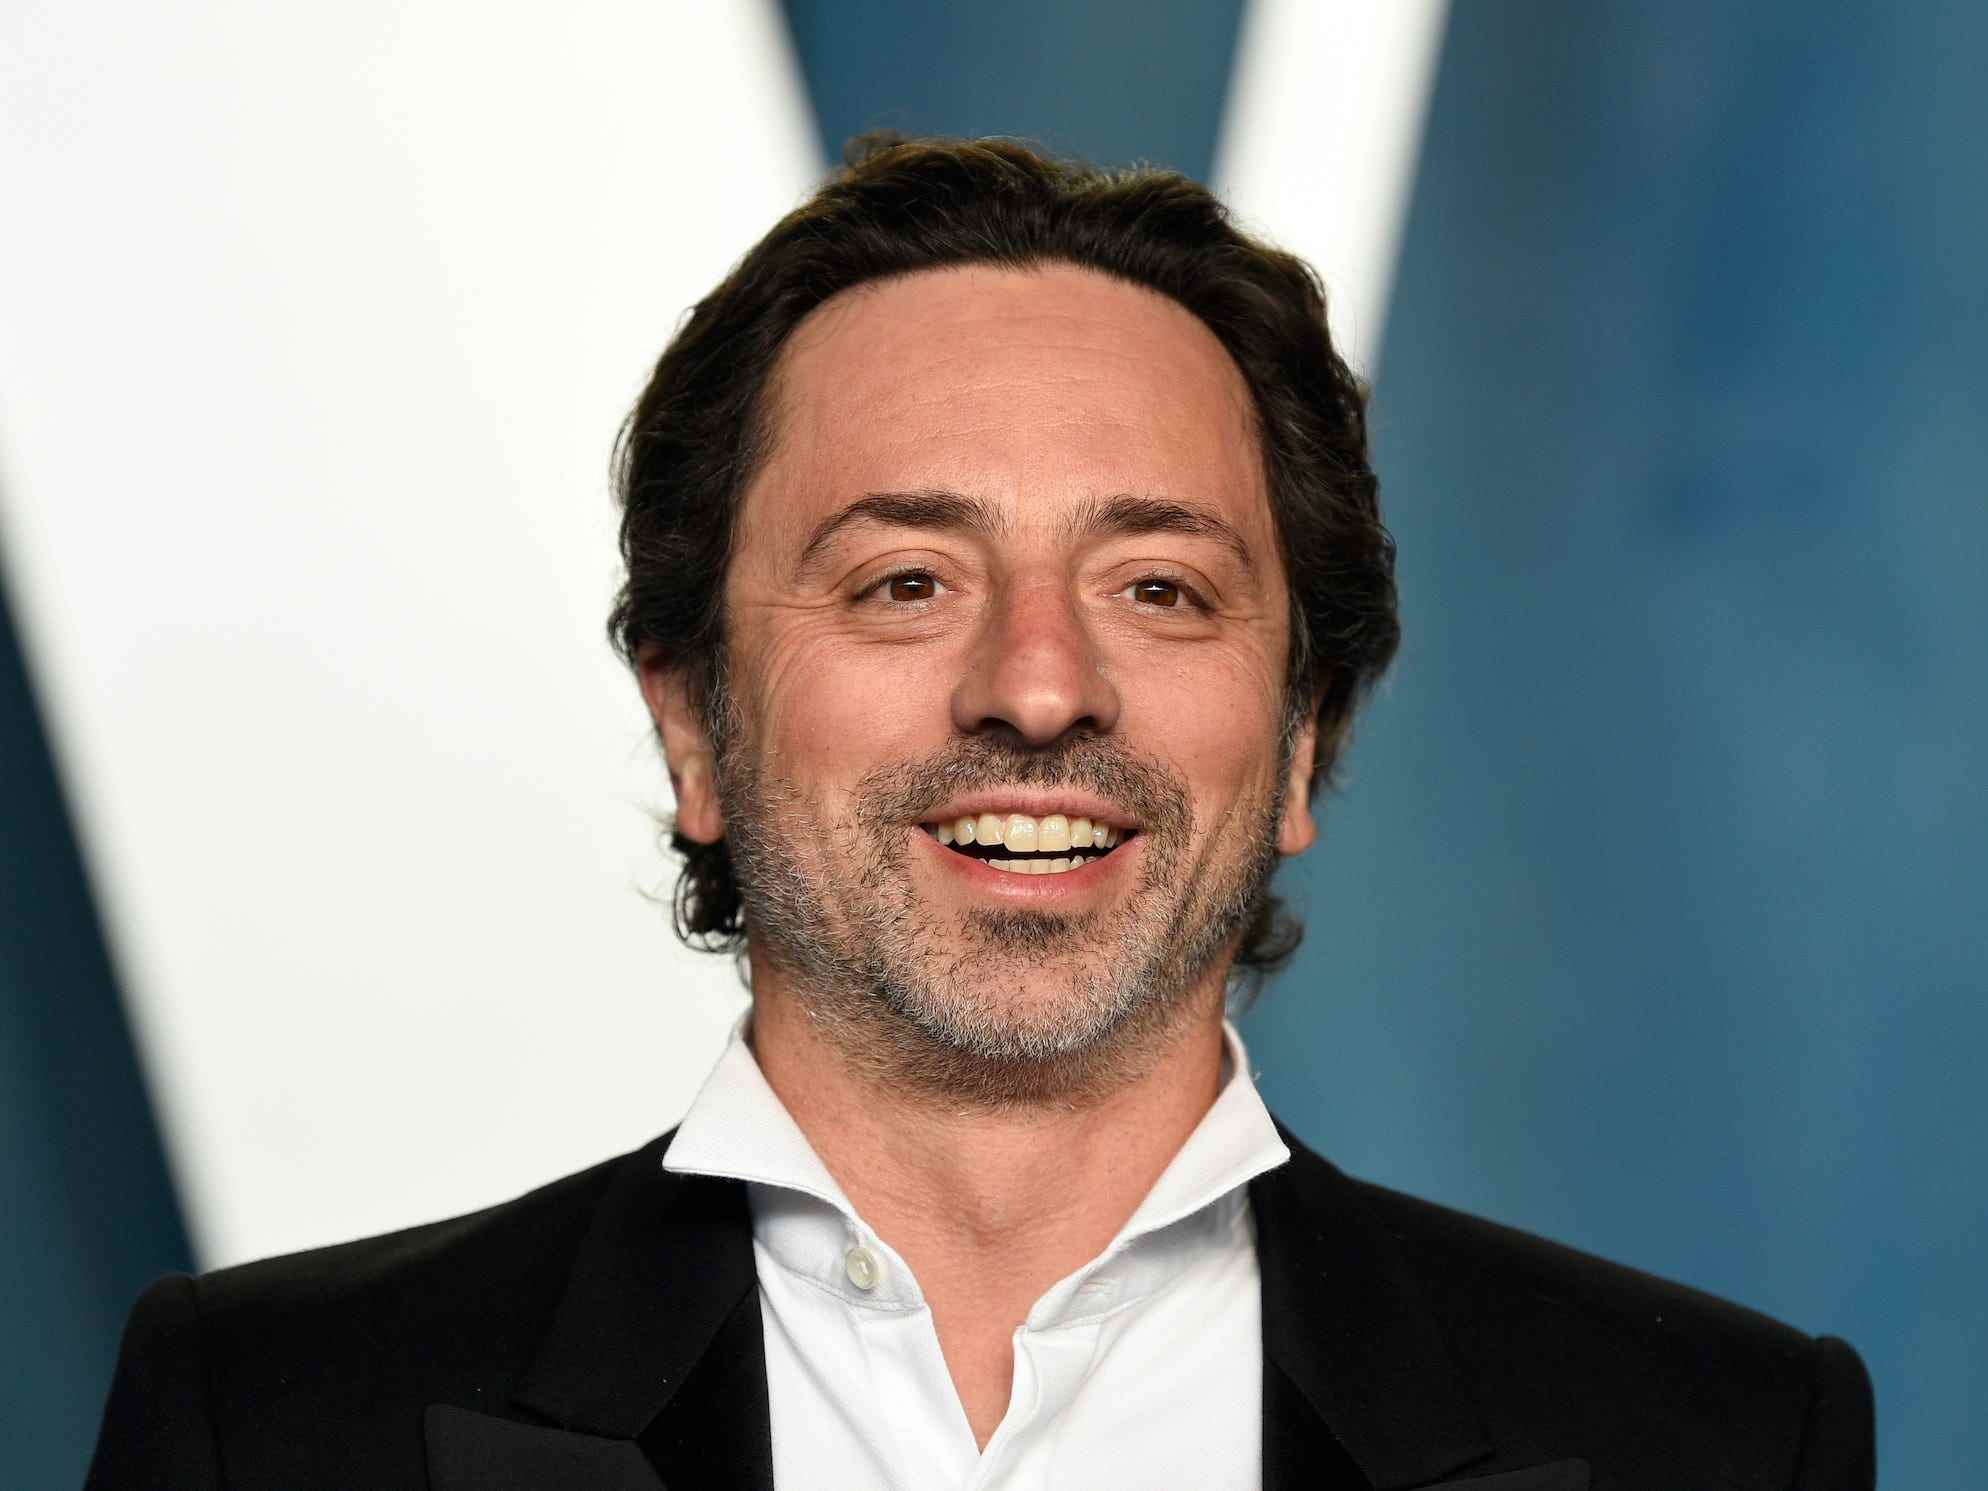 Nahaufnahme von Sergey Brin, der nach der Oscar-Verleihung auf dem roten Teppich lächelt